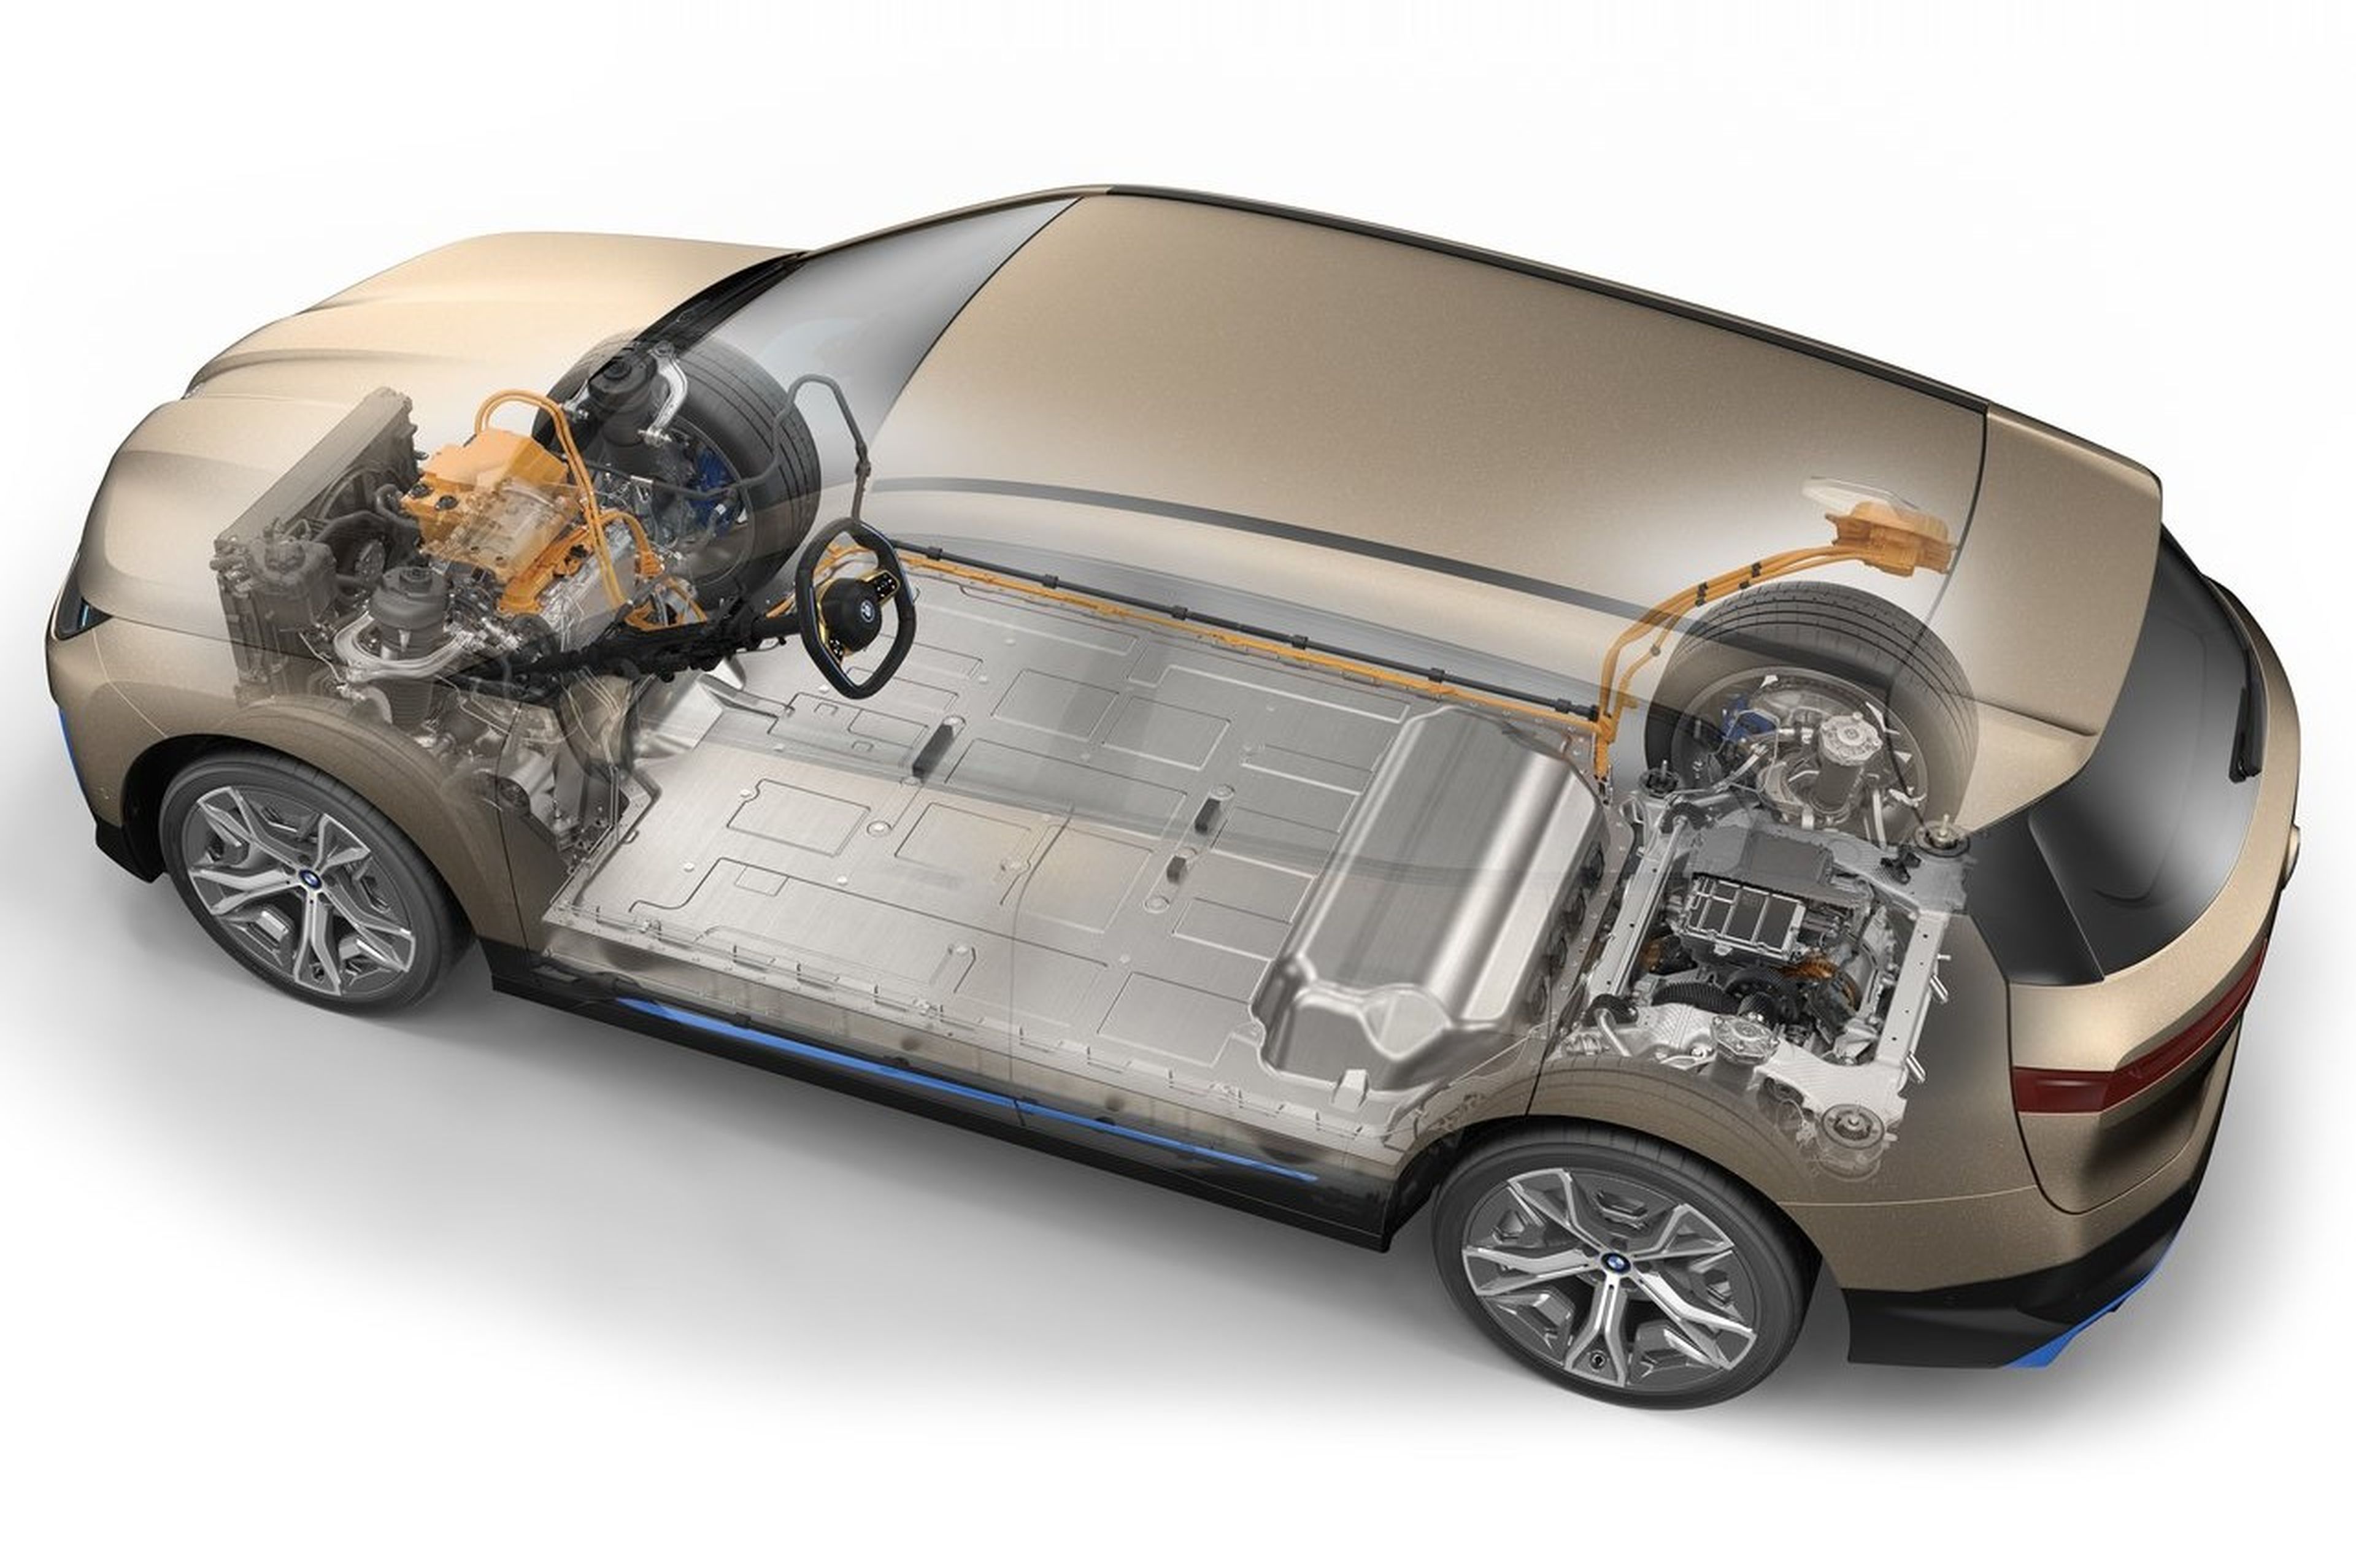 BMW empieza la fabricación de baterías en estado sólido